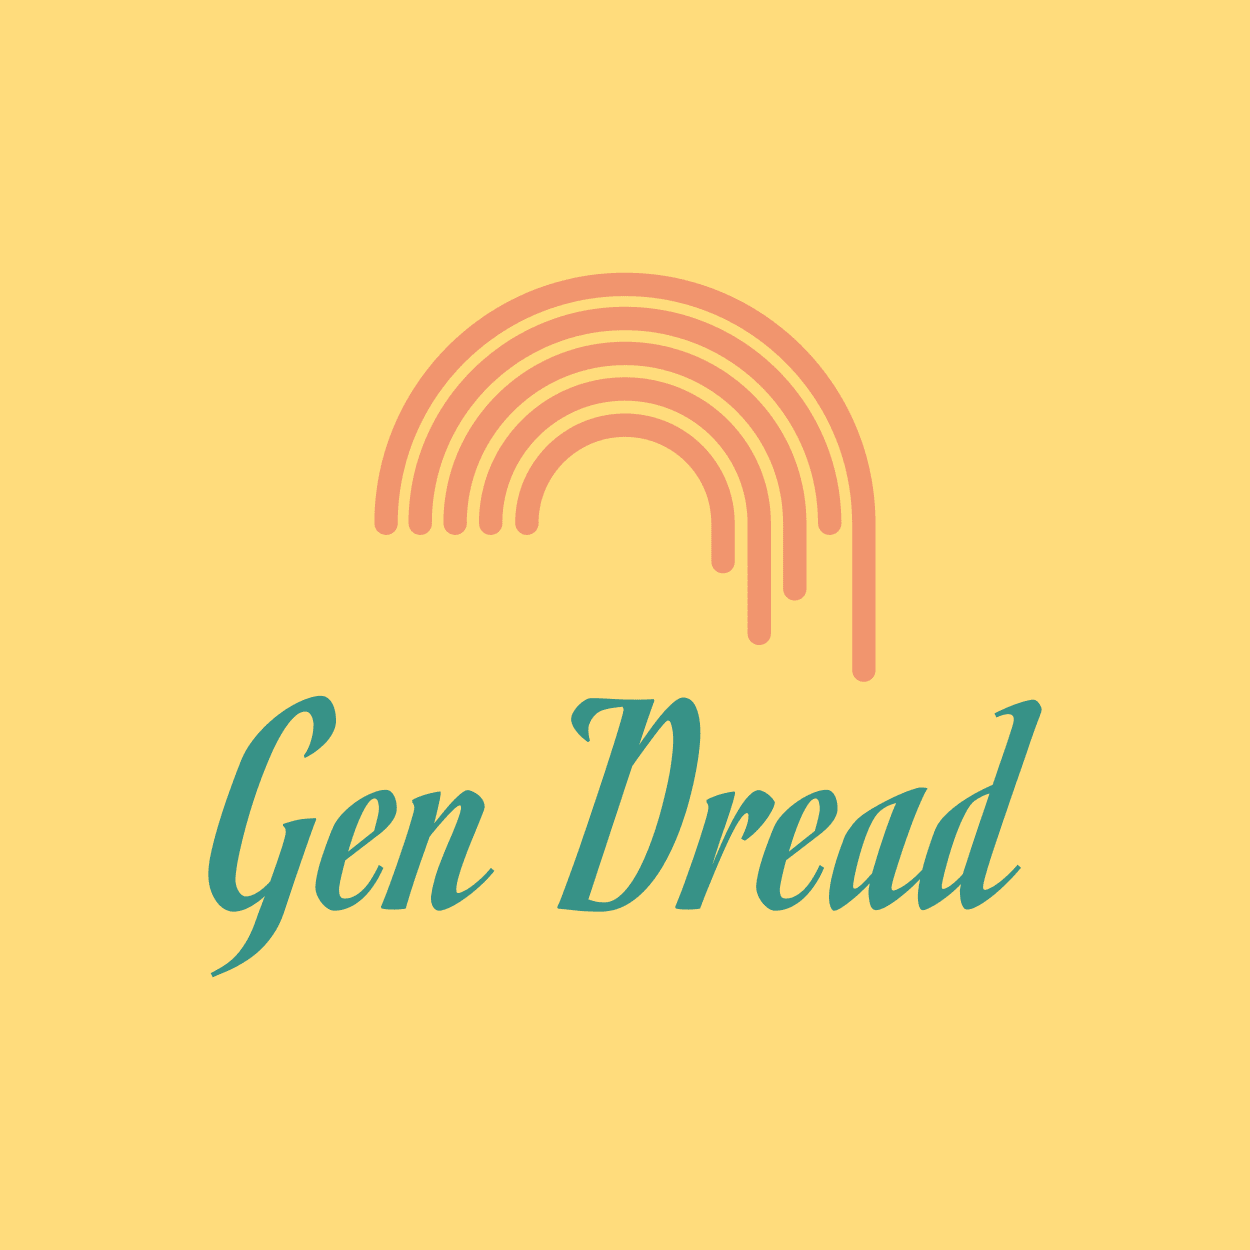 Gen Dread logo 